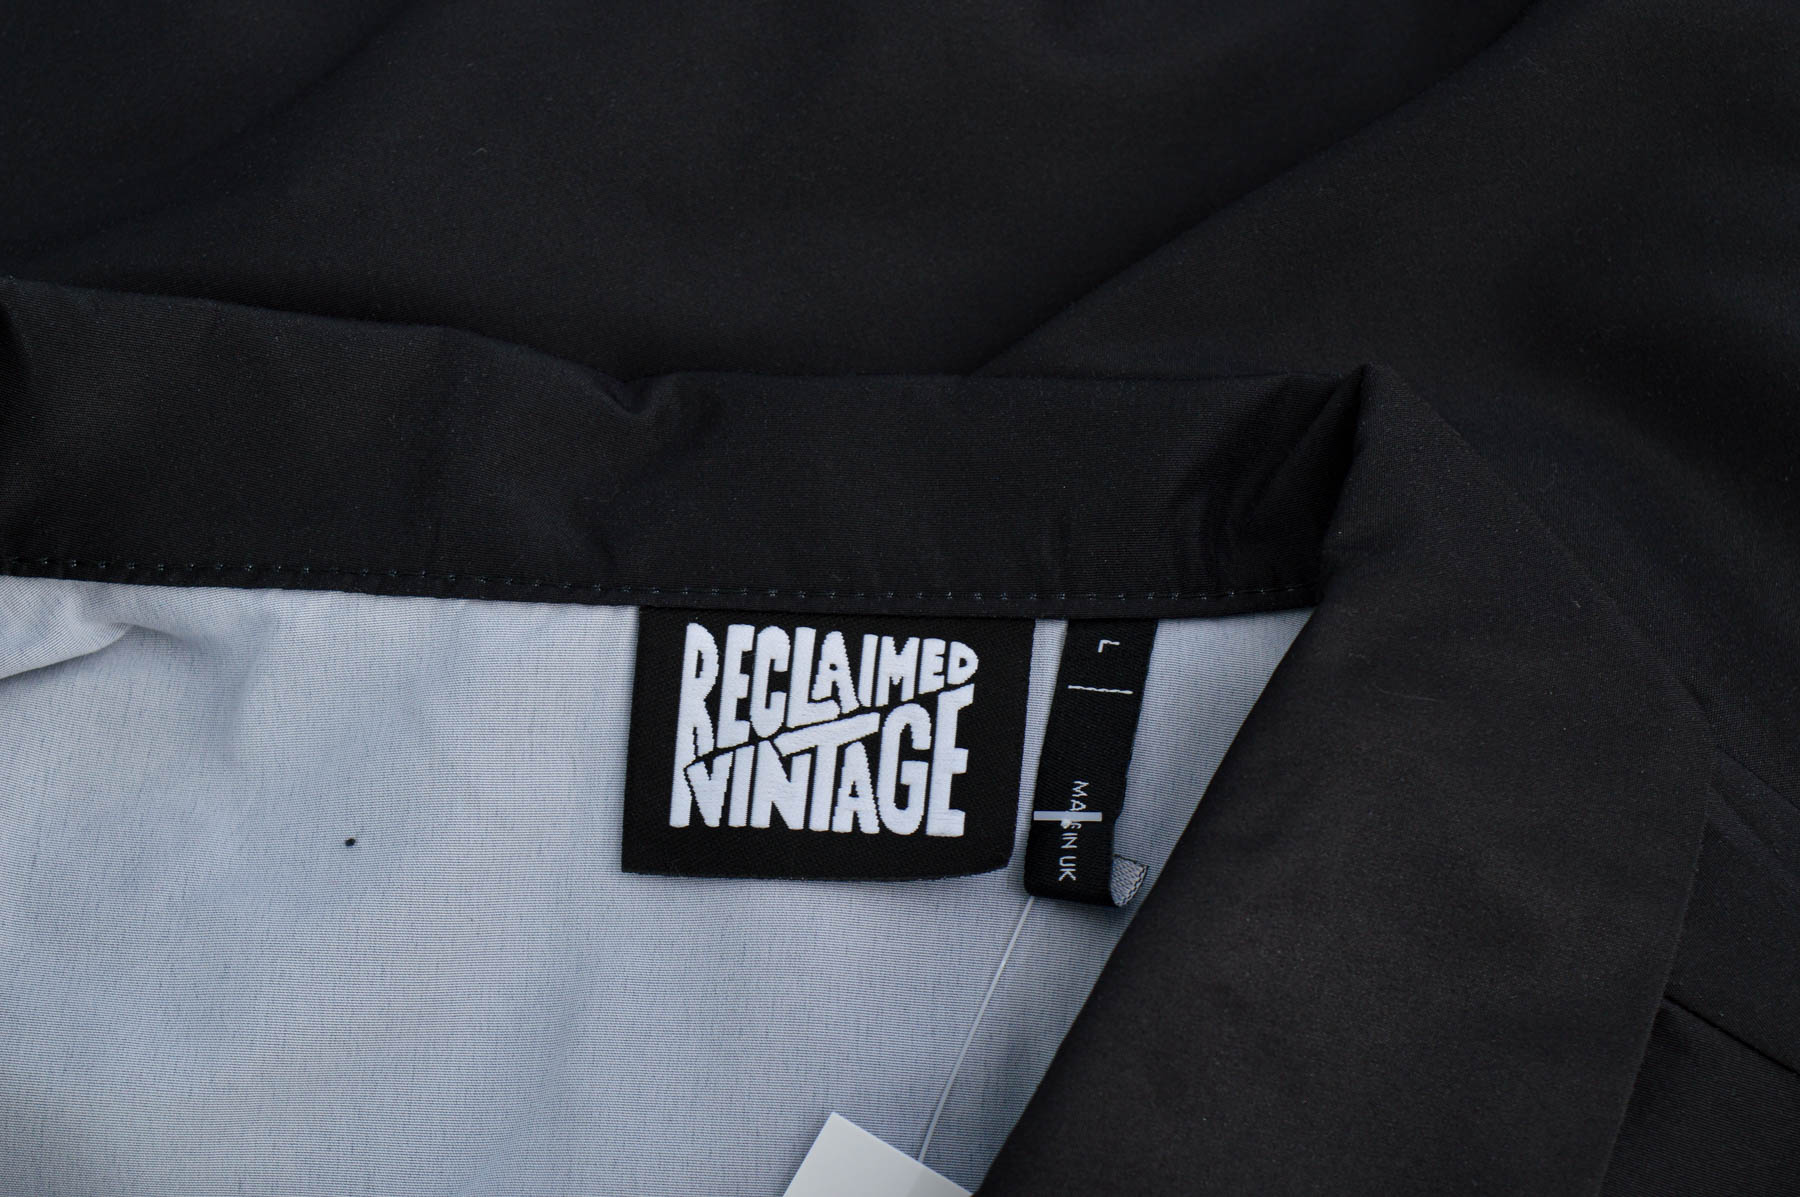 Męska koszula - Reclaimed vintage - 2